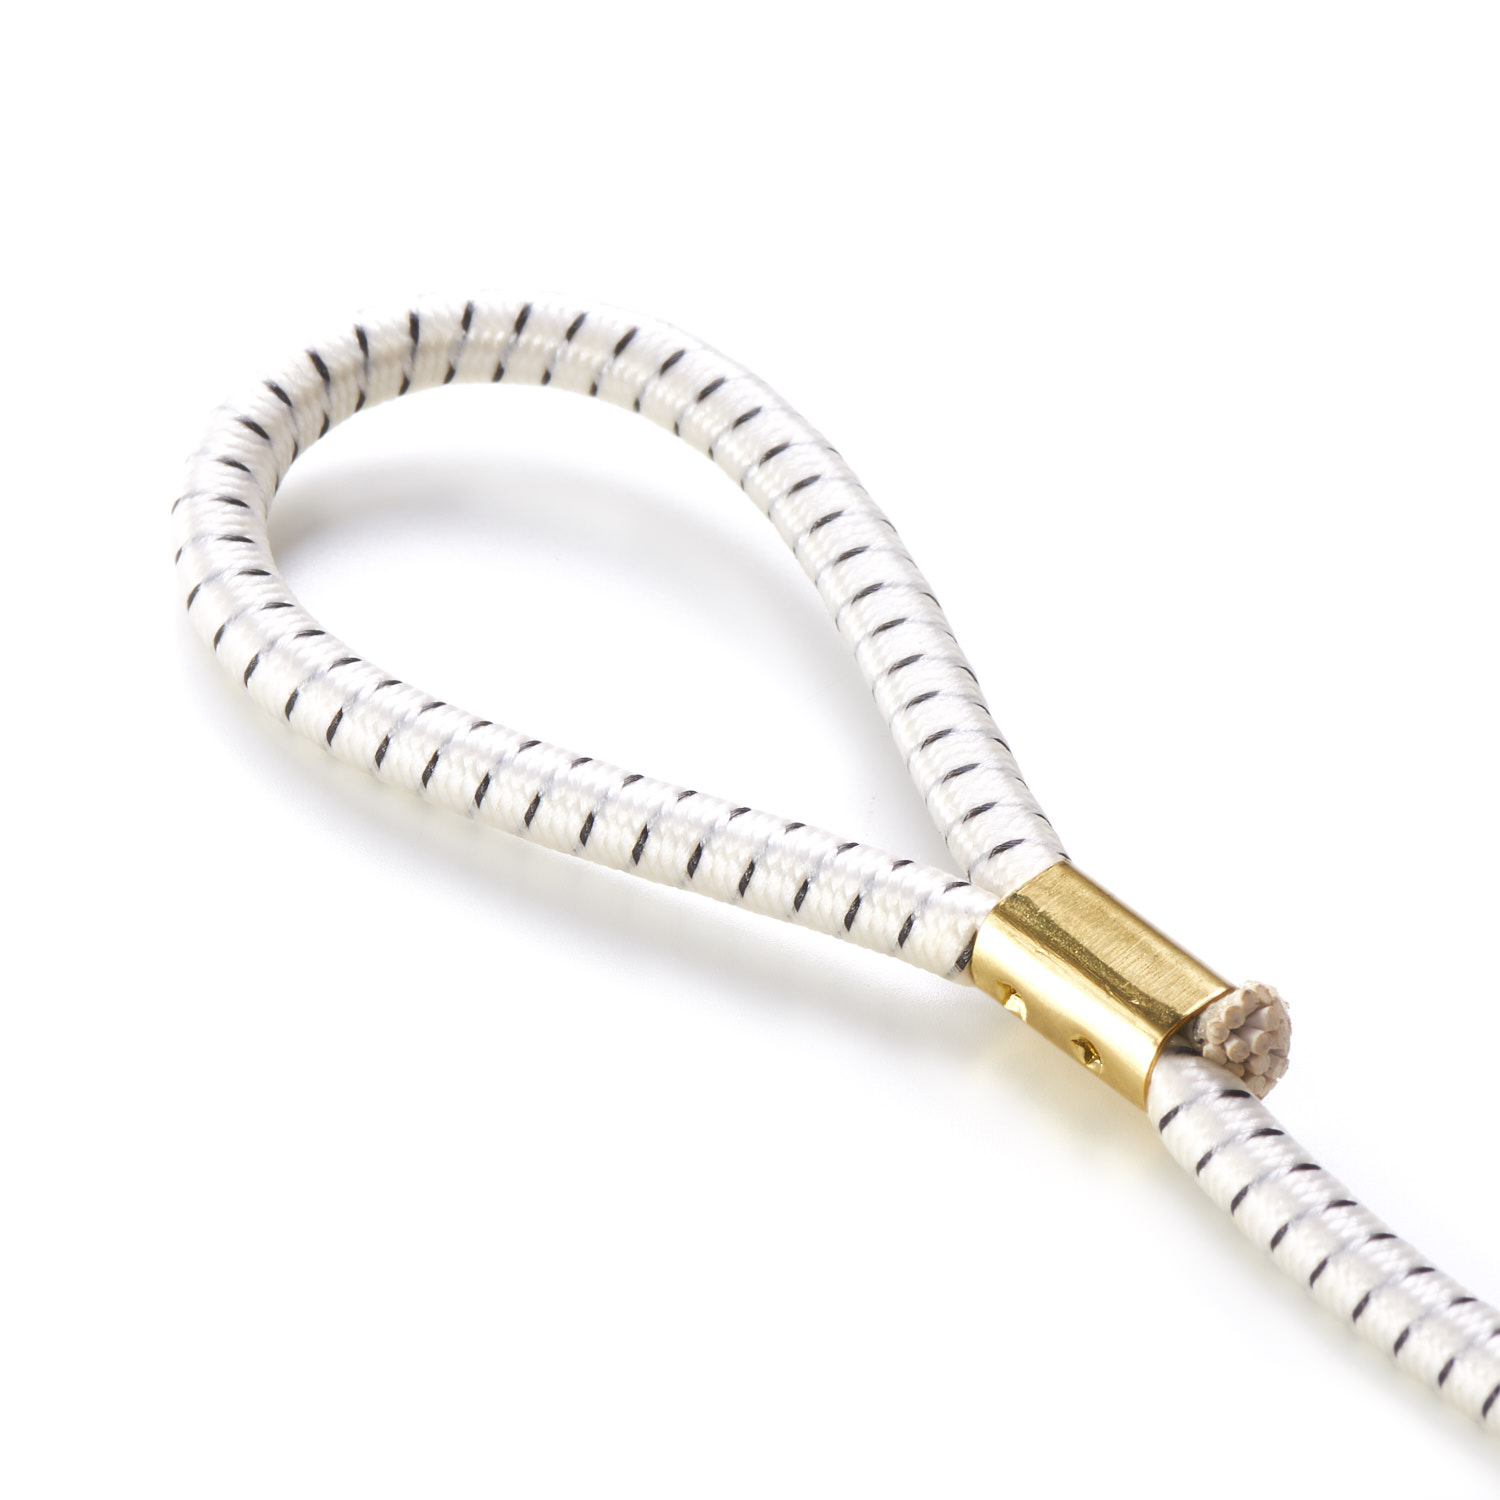 Elasticated Loop Tie Bungee Shock Cord Tie Down